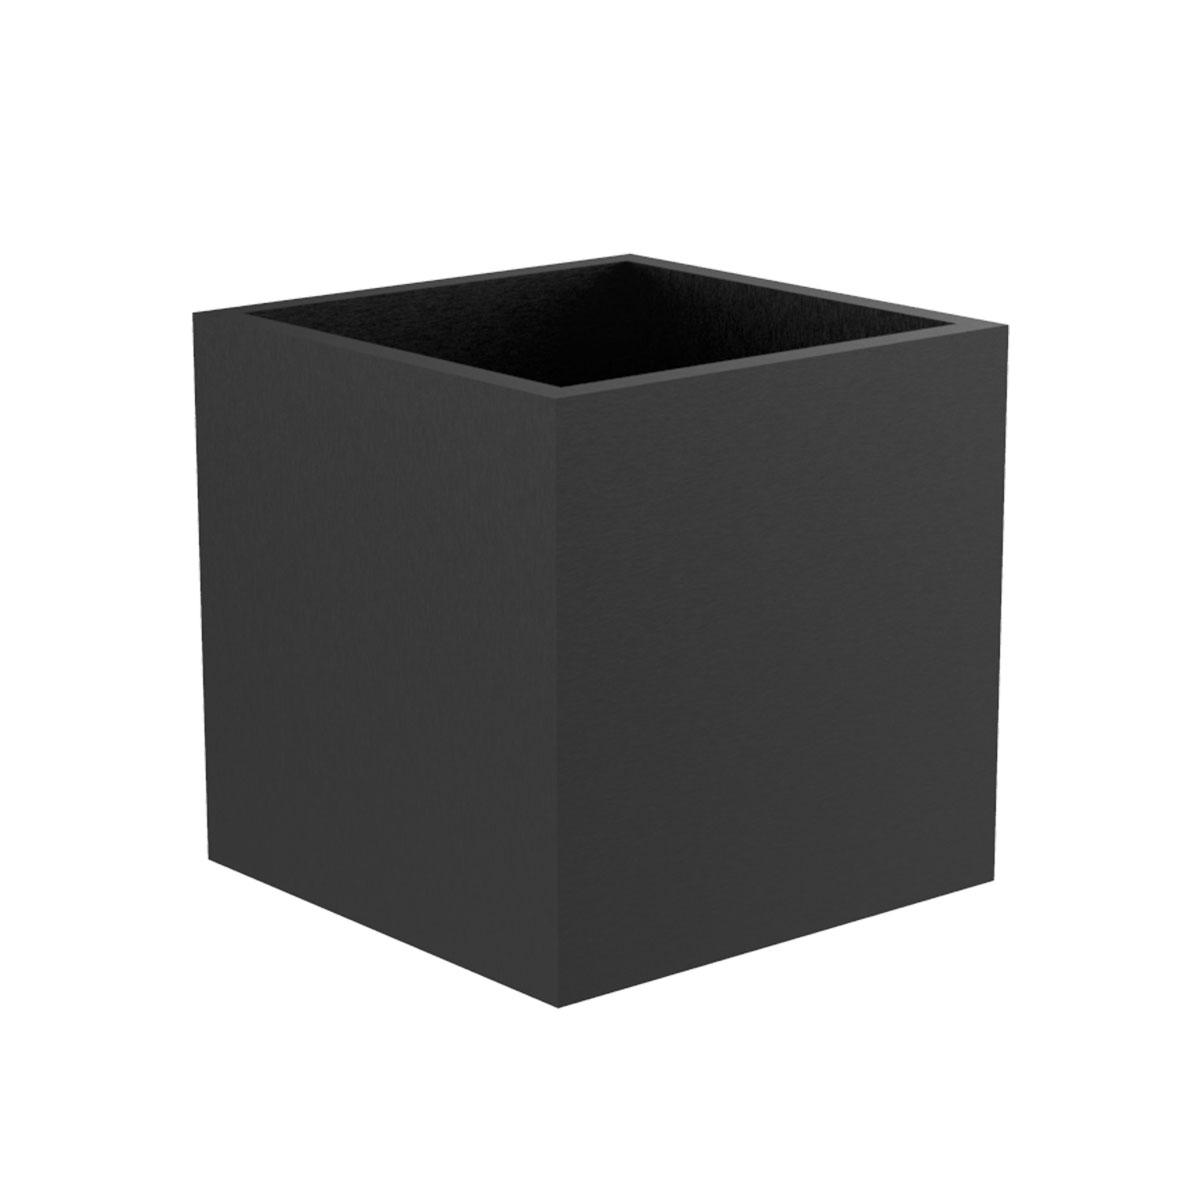 SIGOC Žardinjera Cube S